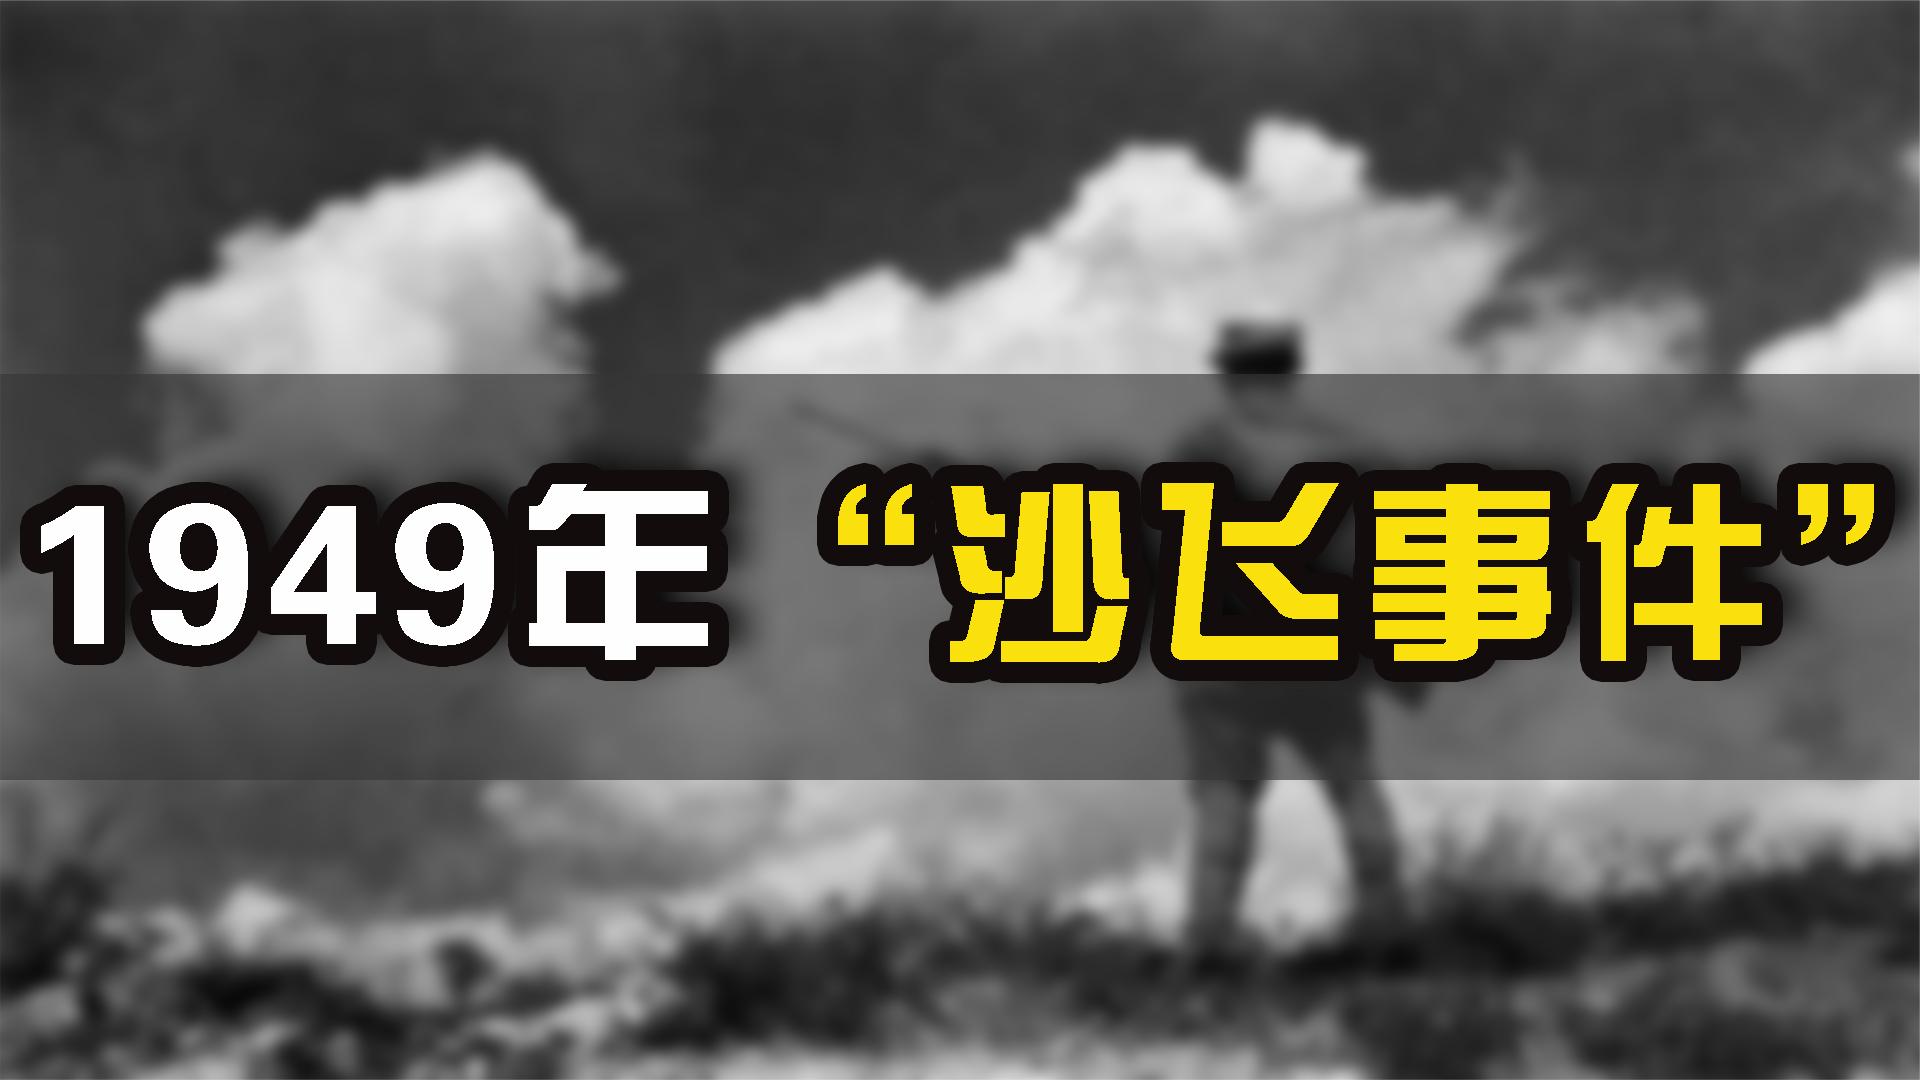 1949年解放军摄影师，因枪杀日本人被处决，死后36年案情出现反转